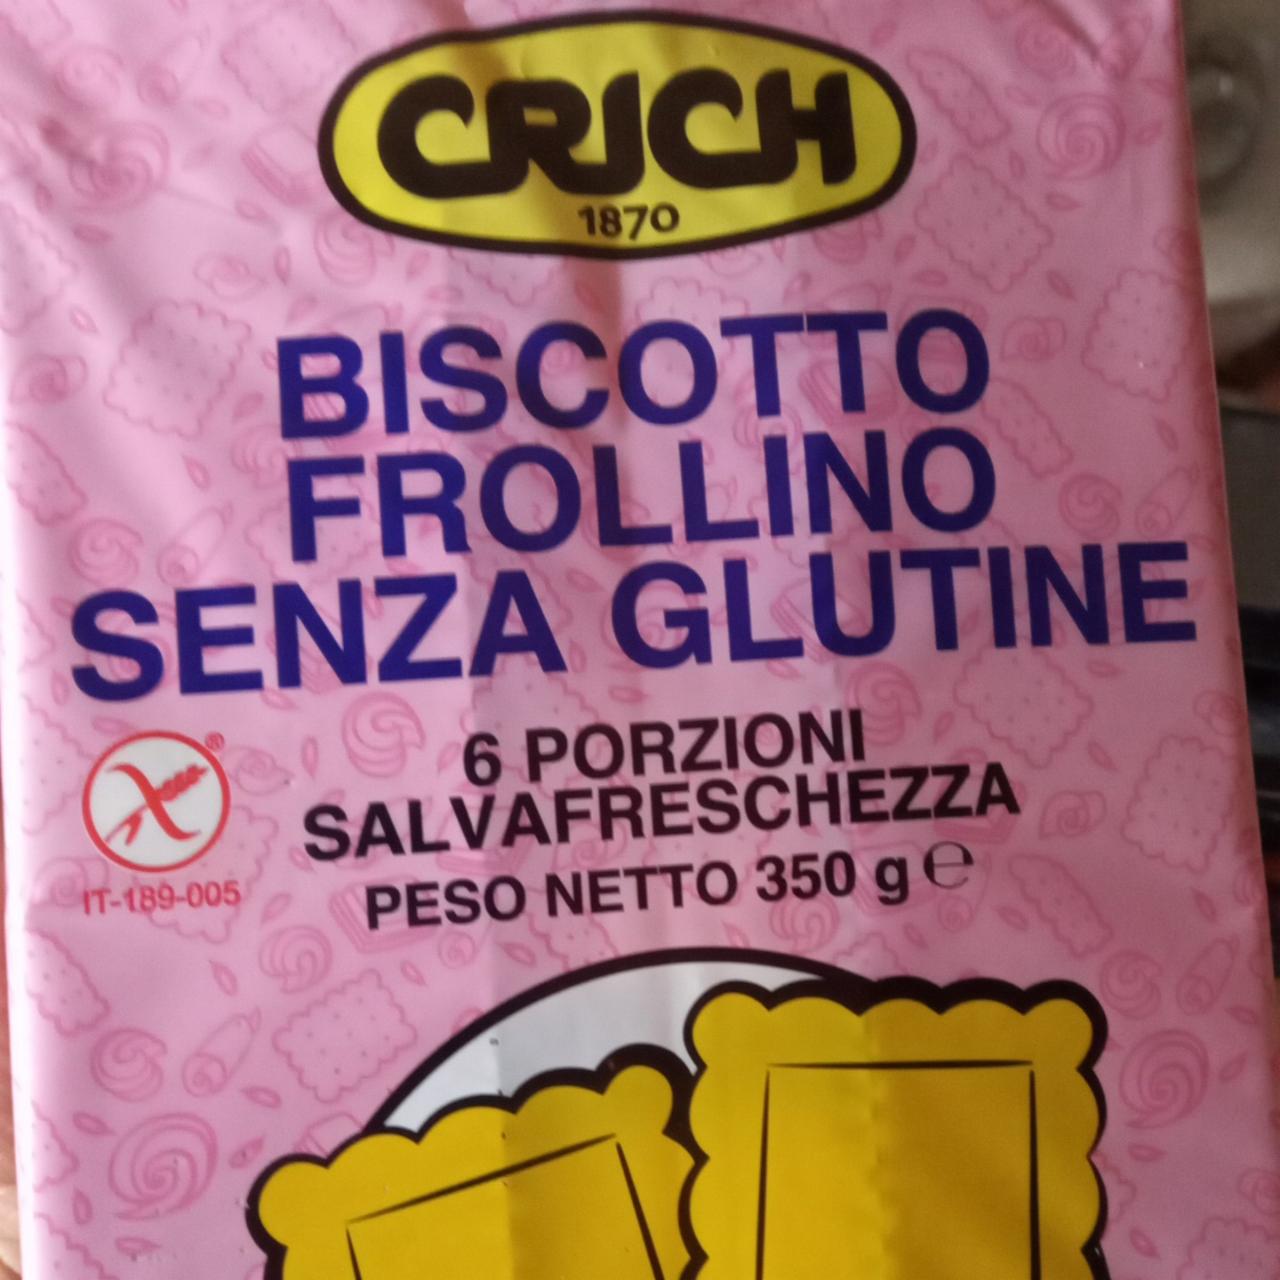 Фото - Biscotto frollino sensa glutine Crich